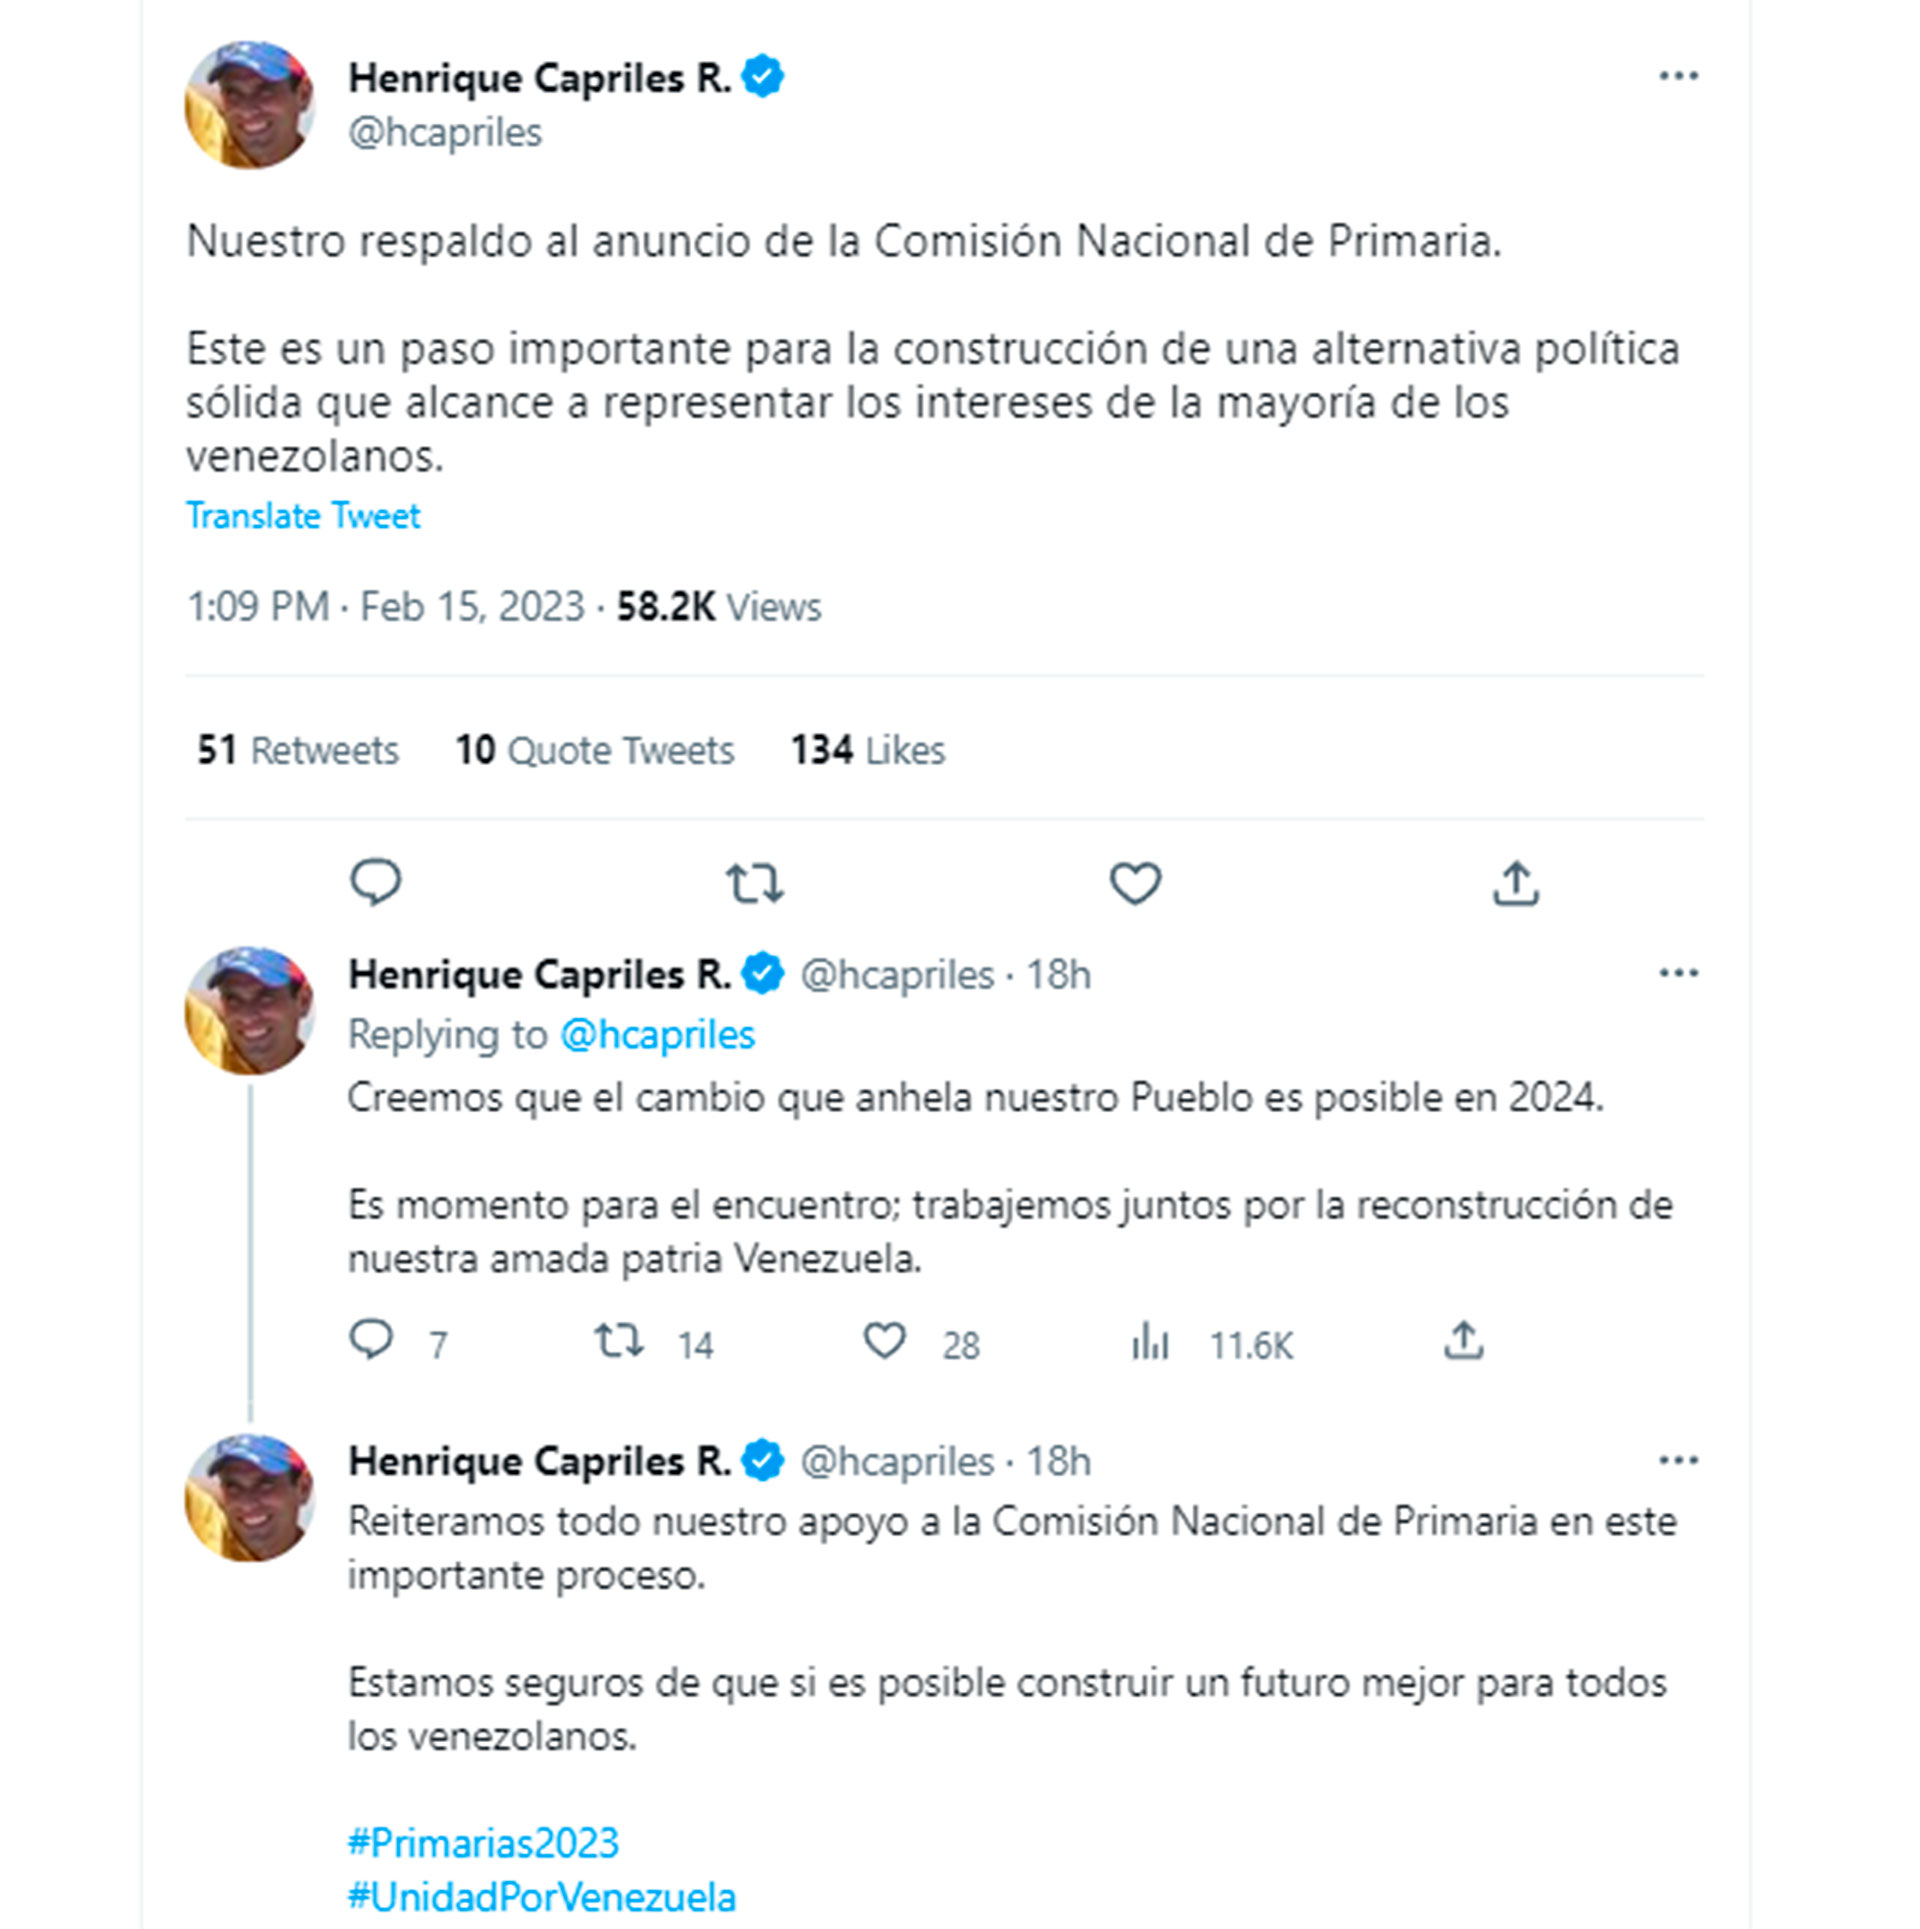 El mensaje de Henrique Capriles